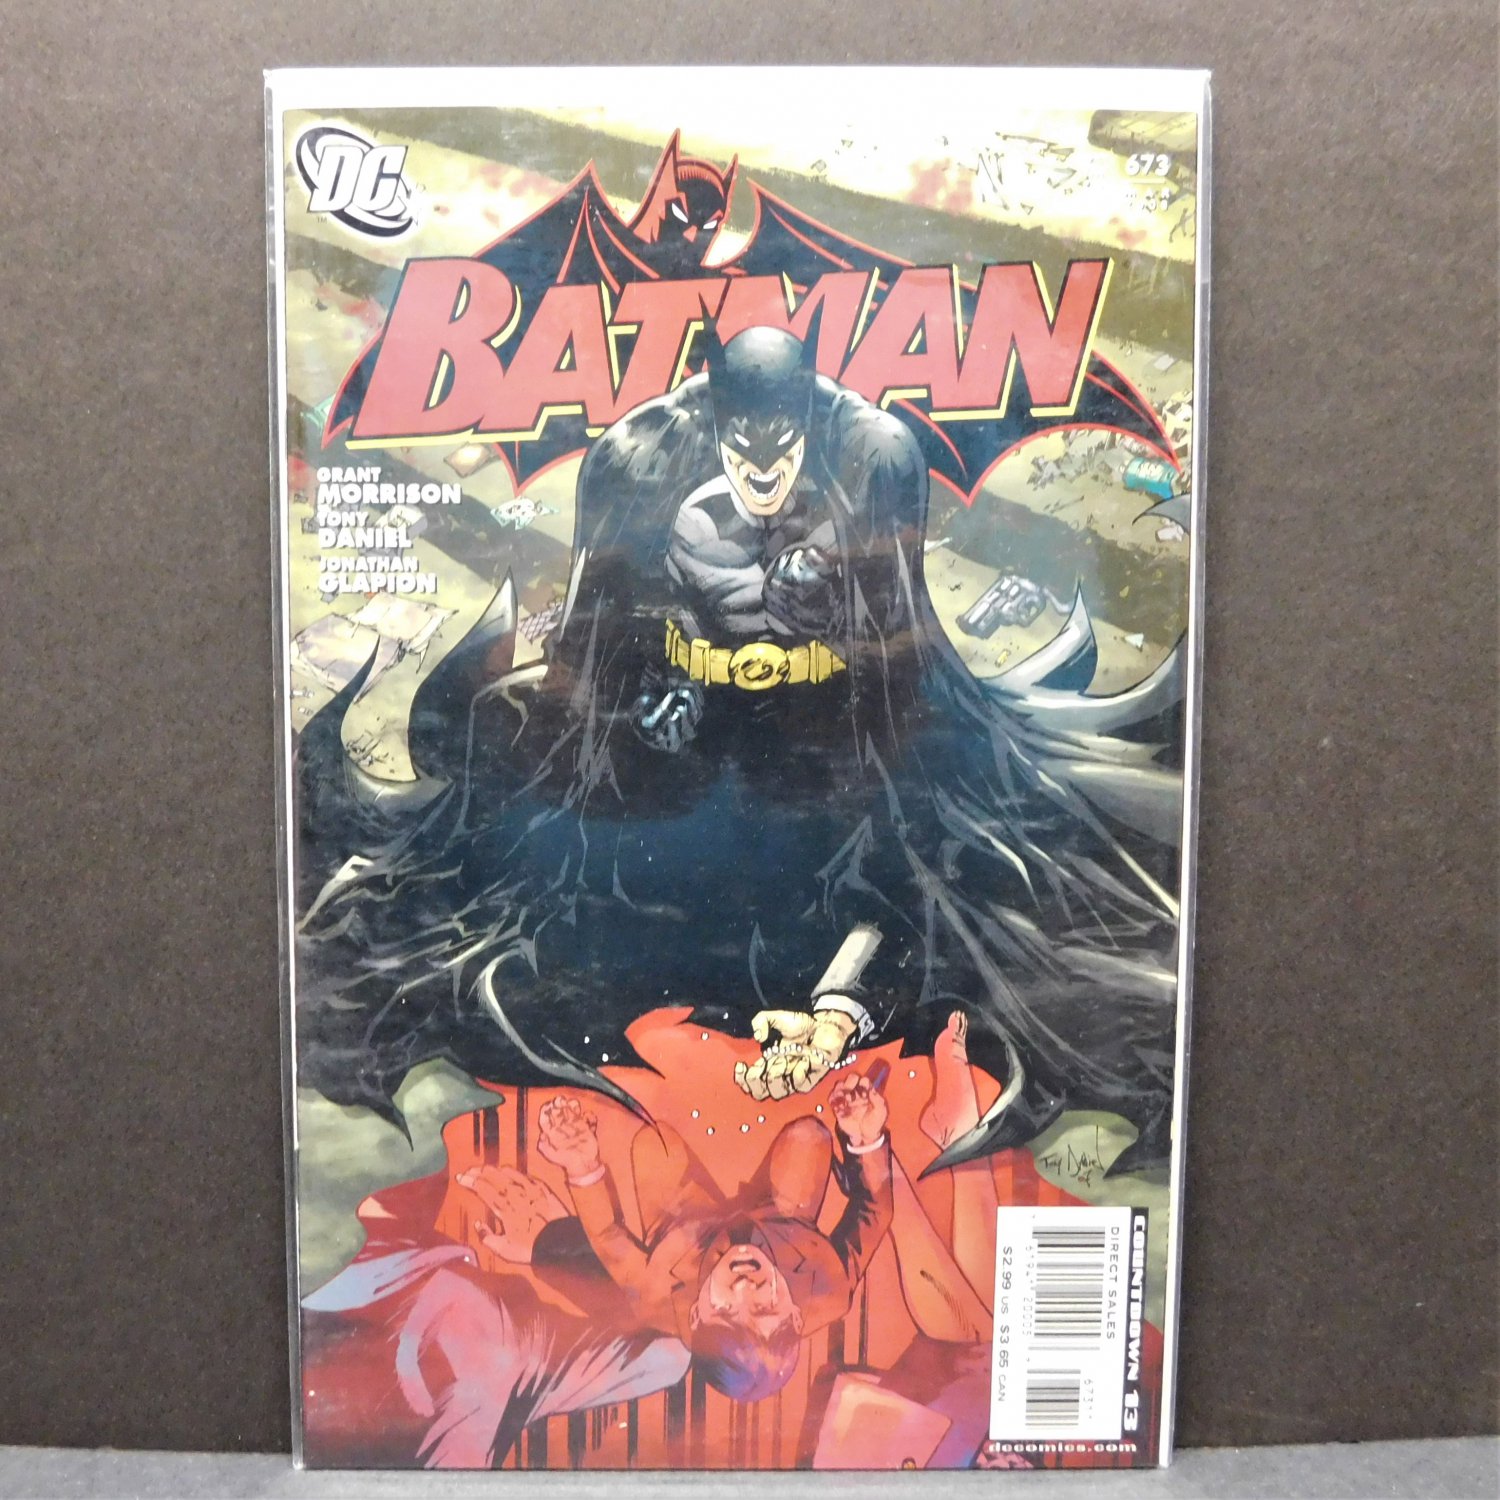 BATMAN #673 - DC Comics - Grant Morrison, Tony Daniel